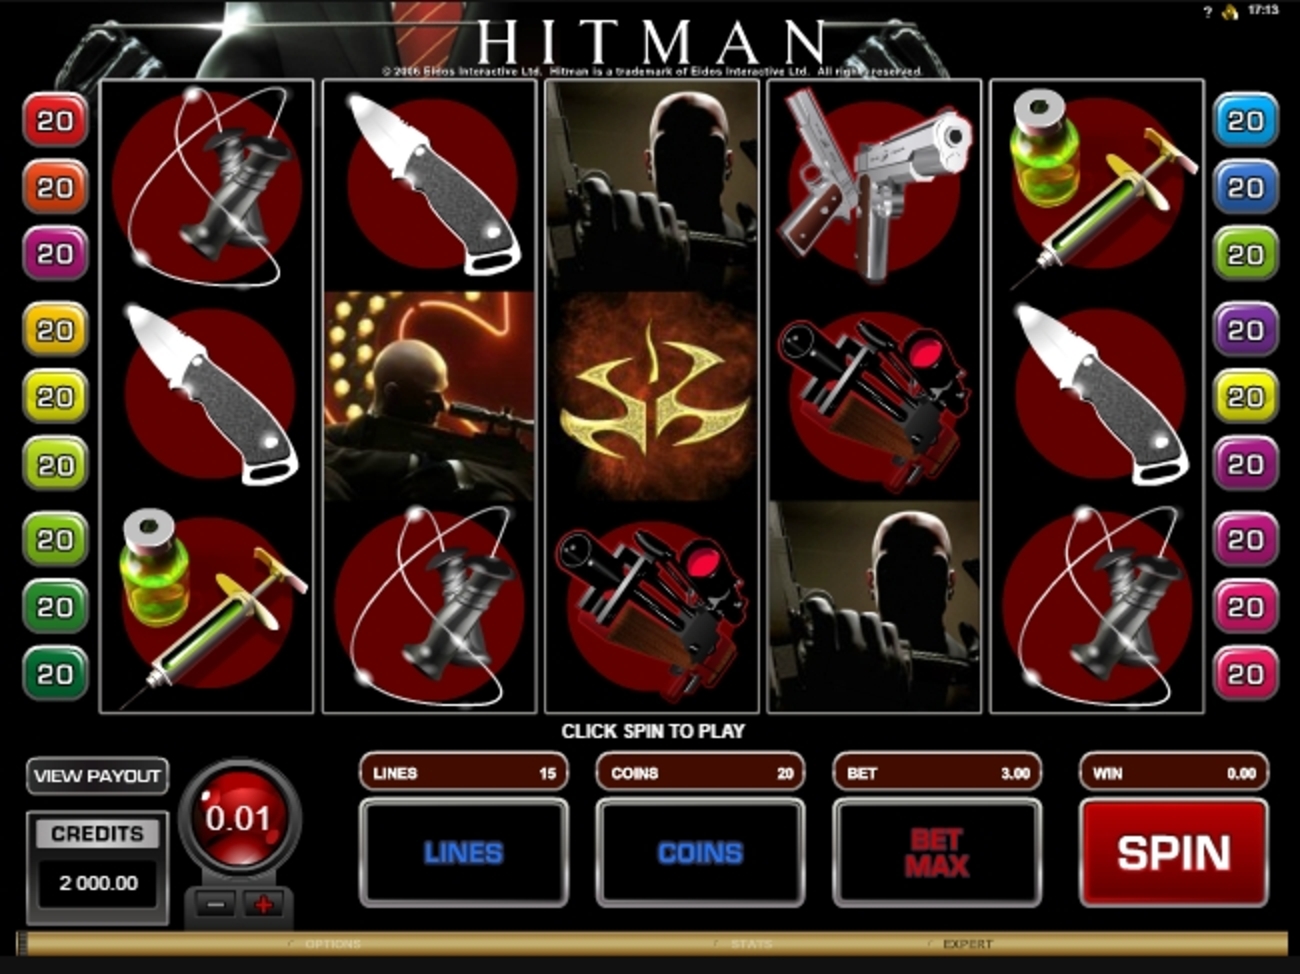 Reels in Hitman Slot Game by Microgaming